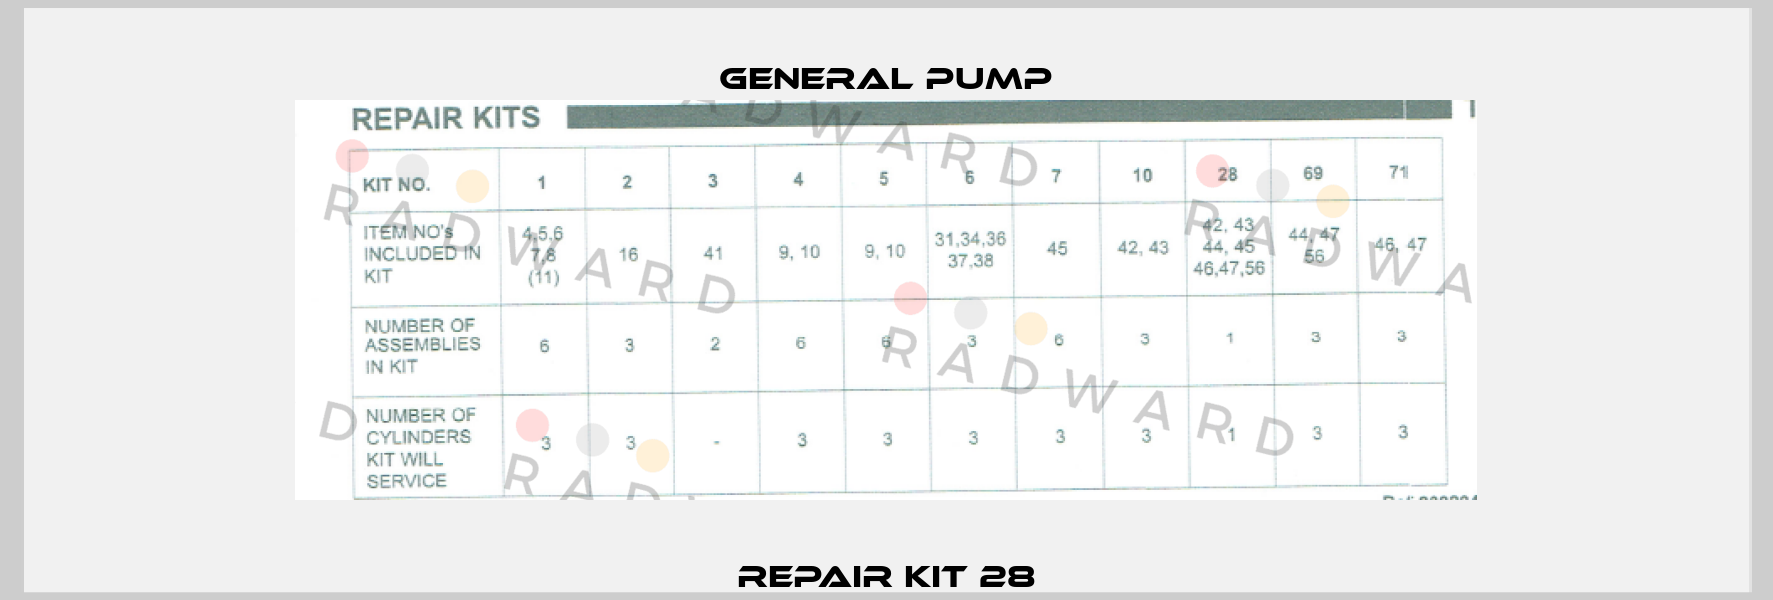 Repair Kit 28 General Pump